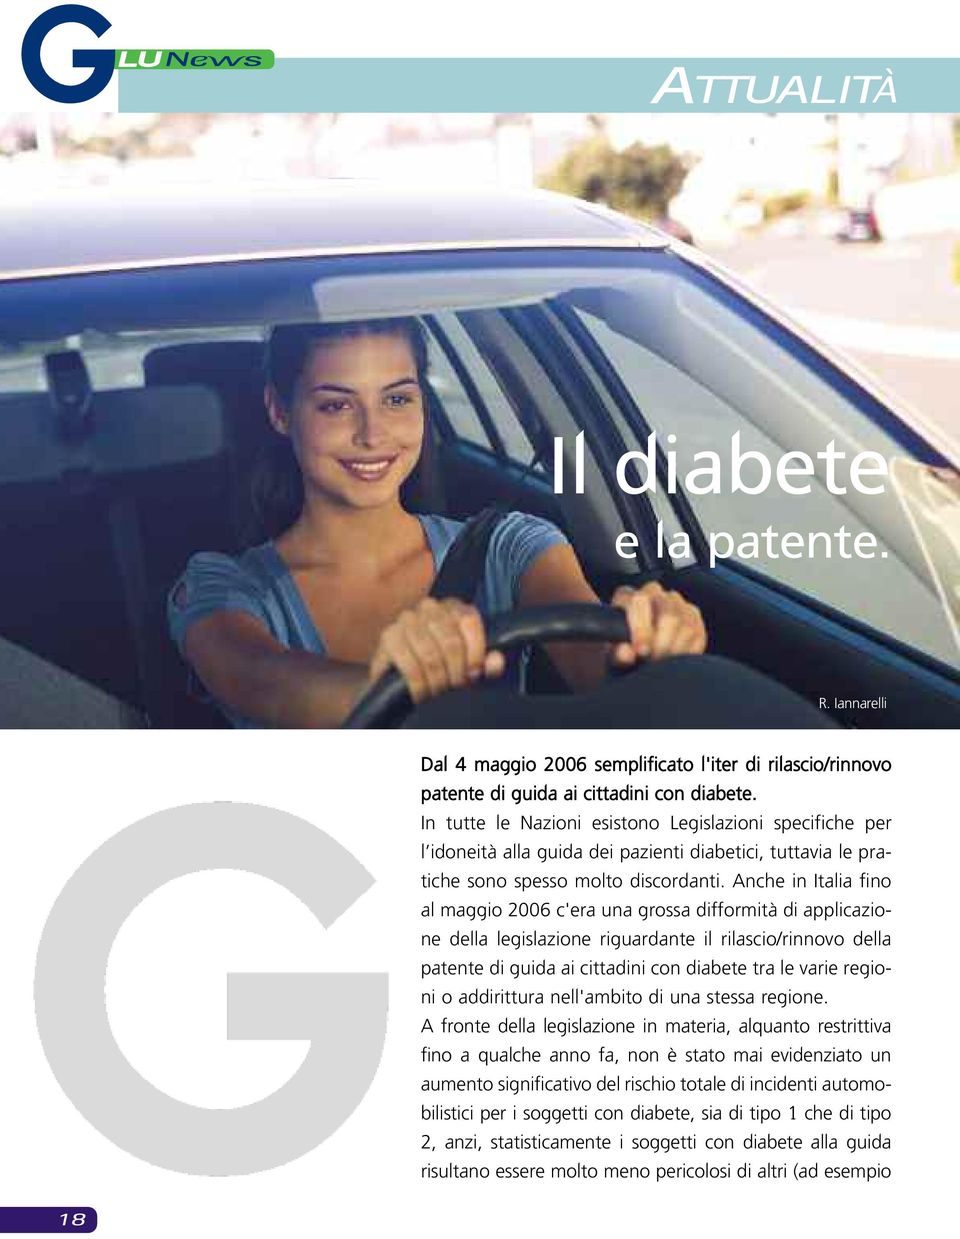 Anche in Italia fino al maggio 2006 c'era una grossa difformità di applicazione della legislazione riguardante il rilascio/rinnovo della patente di guida ai cittadini con diabete tra le varie regioni